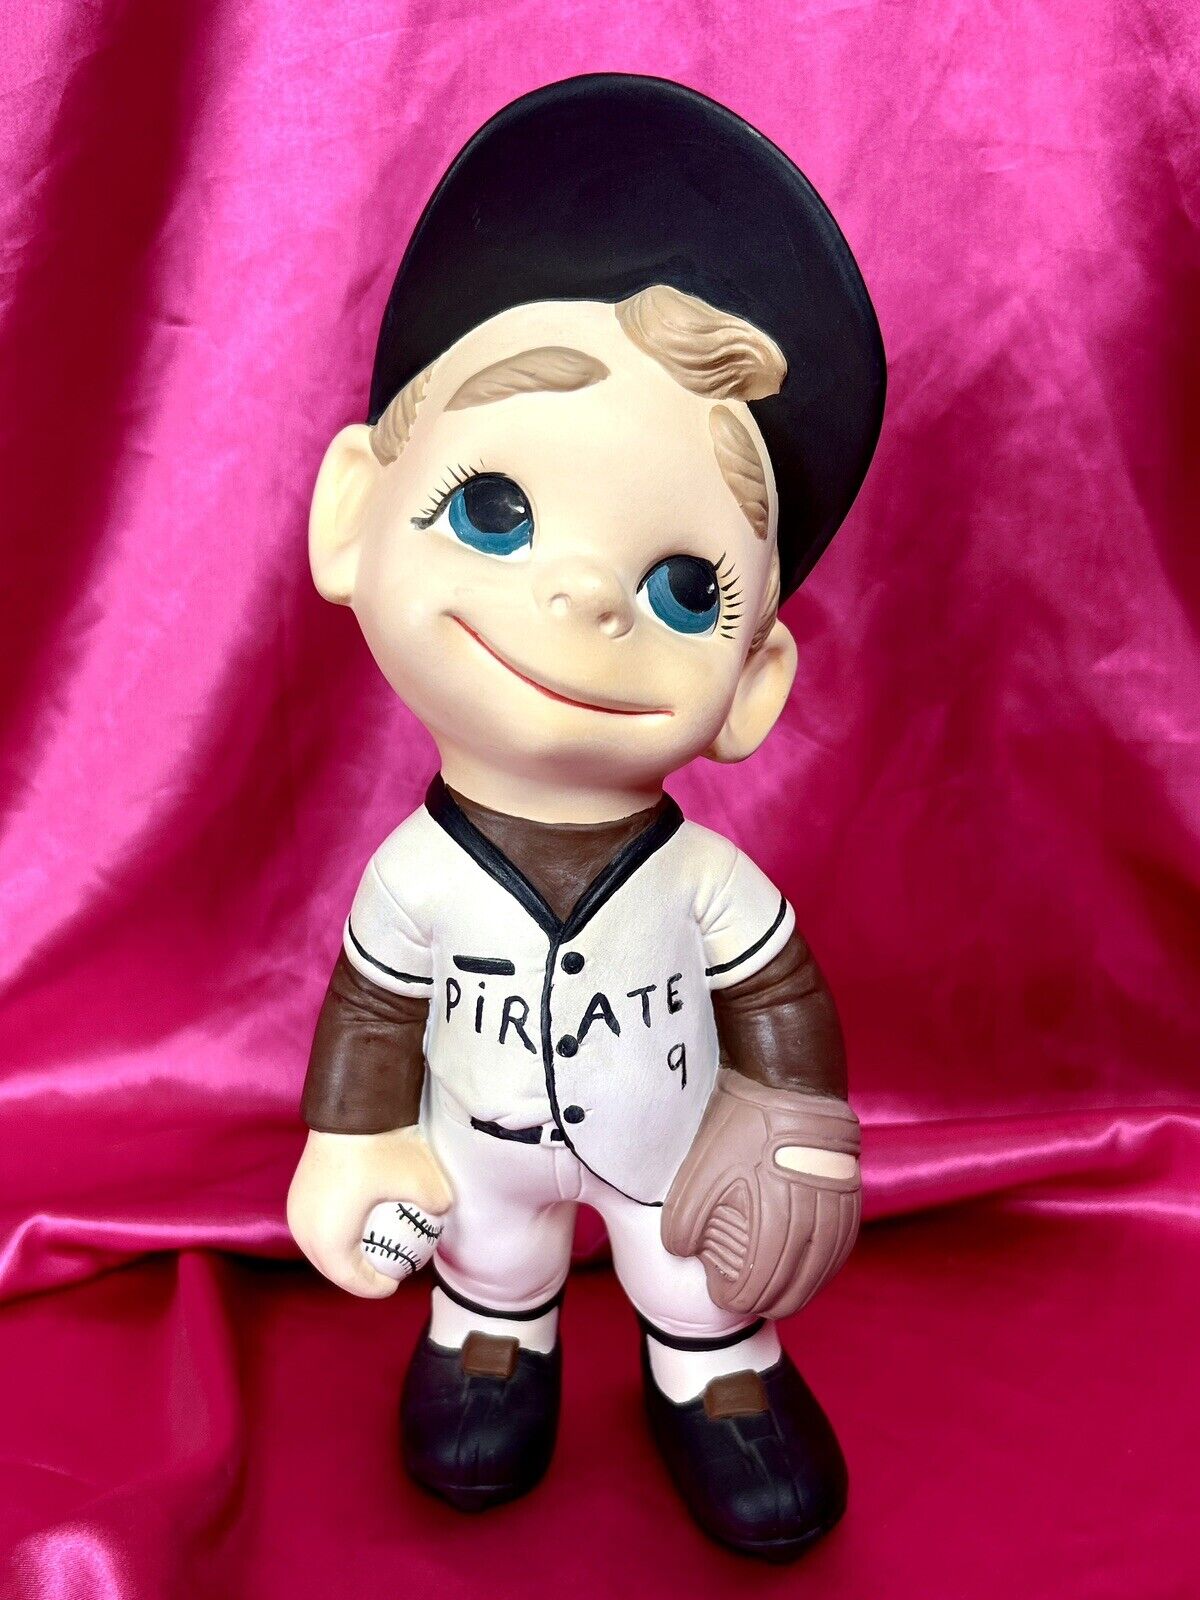 Vintage Baseball Player Figurine Smiley Boy Atlantic Mold Pittsburgh Pirates MLB